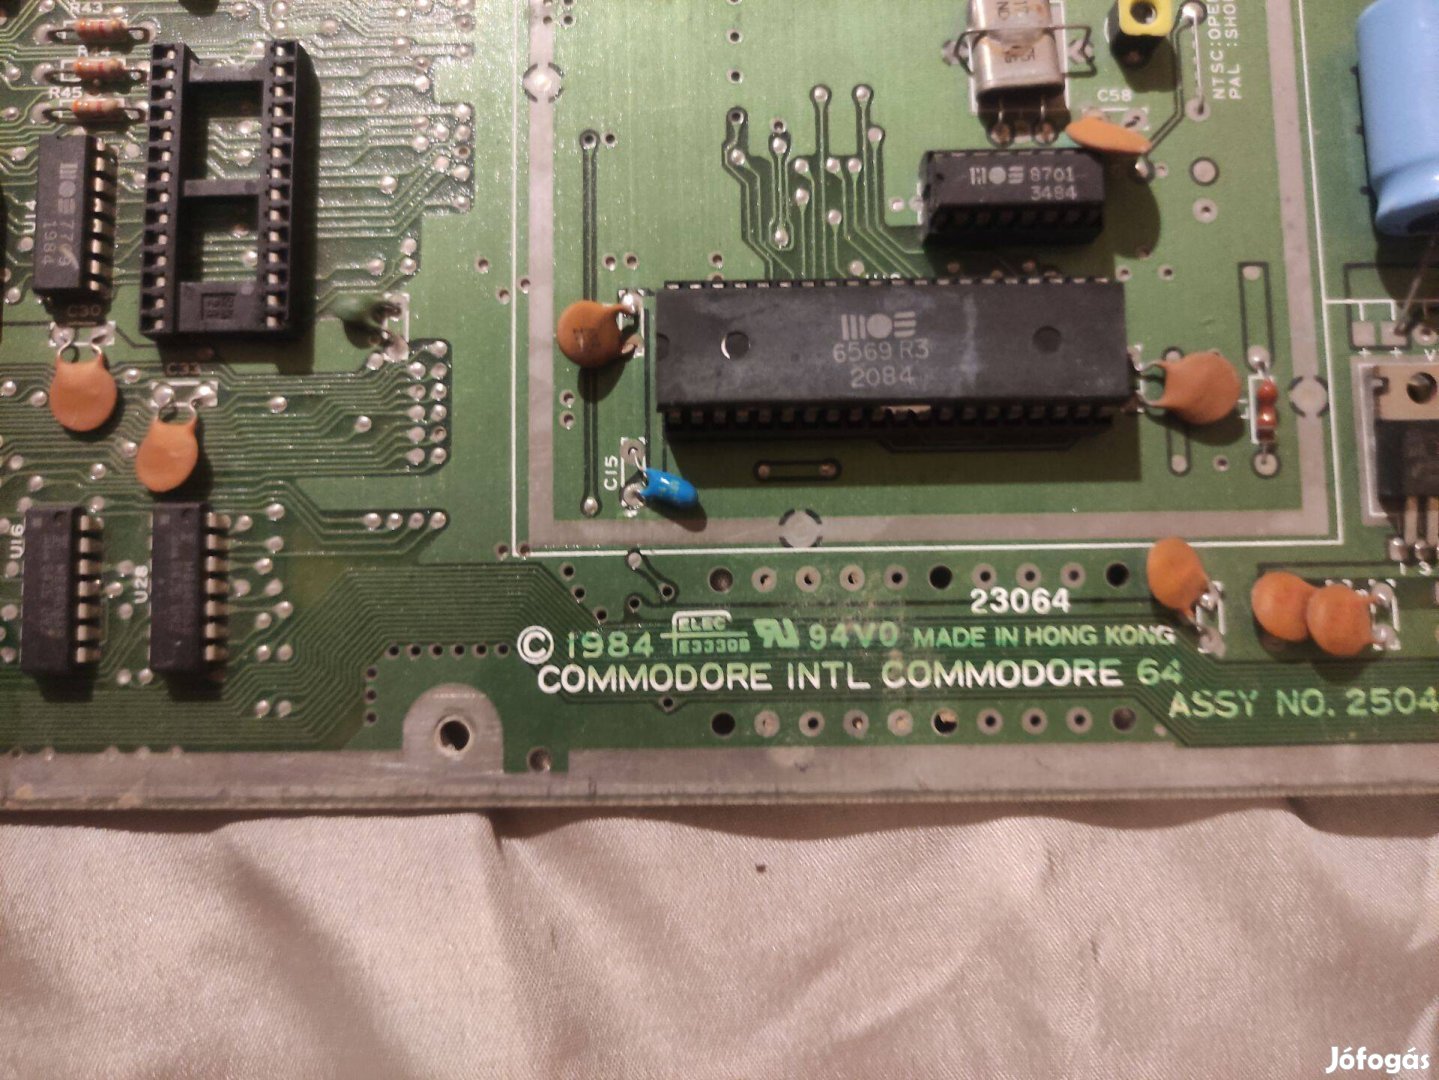 Commodore 64 retro számítógép C64 ASSY NO 250425 alaplap